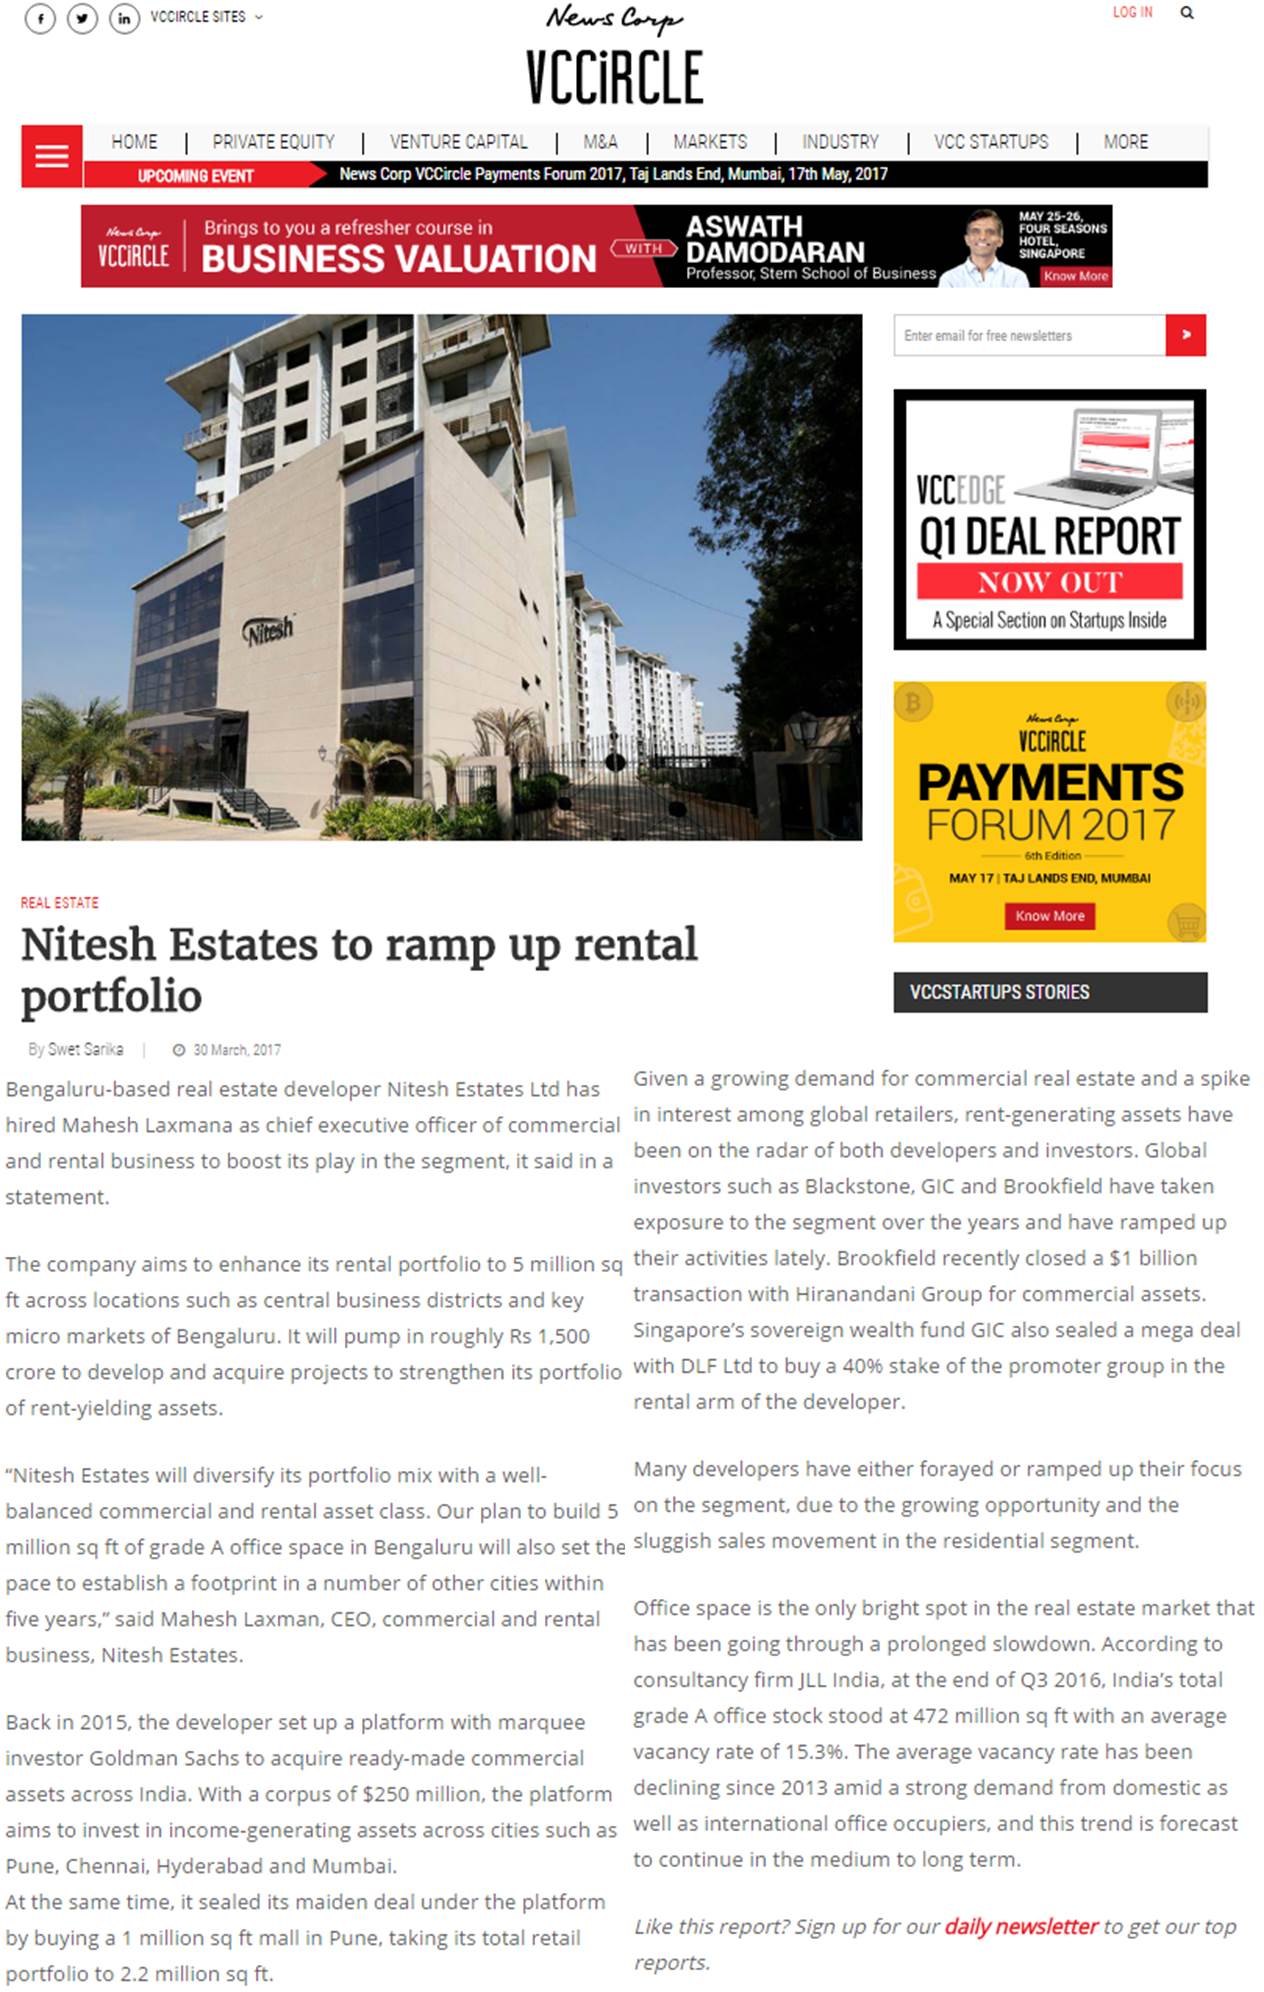 VC Circle – Nitesh Estates to ramp up rental portfolio